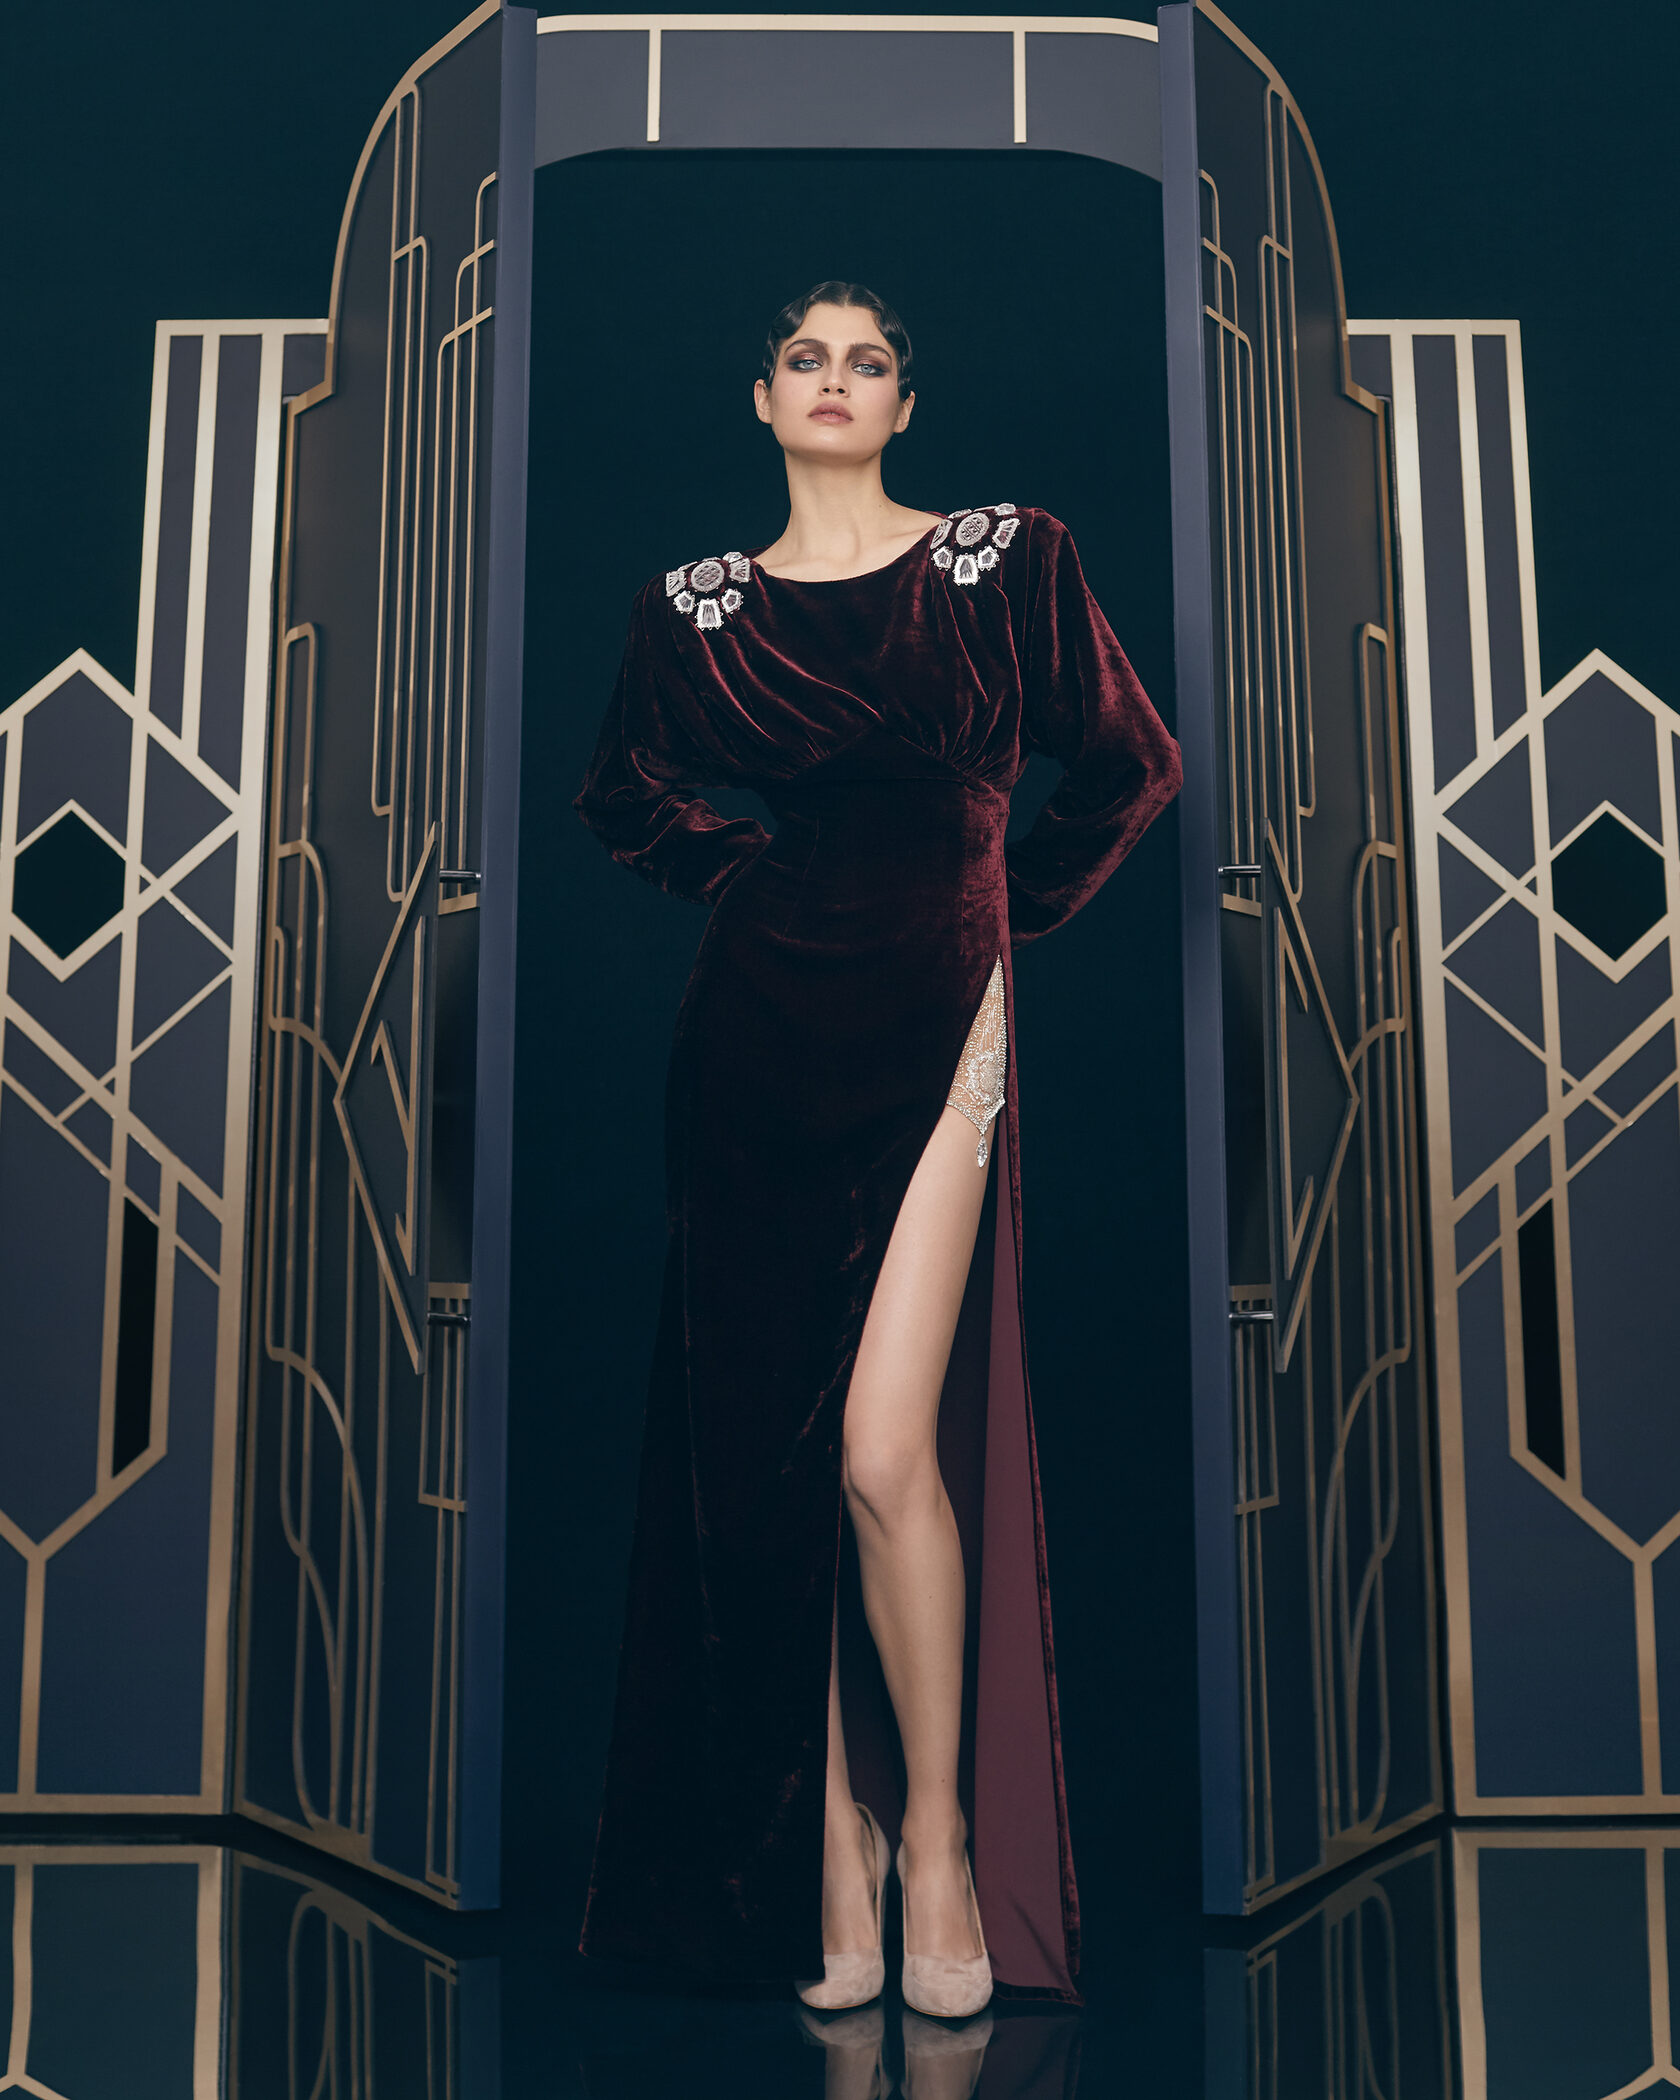 Ульяна Сергеенко - известный модельер, основатель модного дома. В новой коллекции одежды и аксессуаров она использовала гусевской хрусталь.